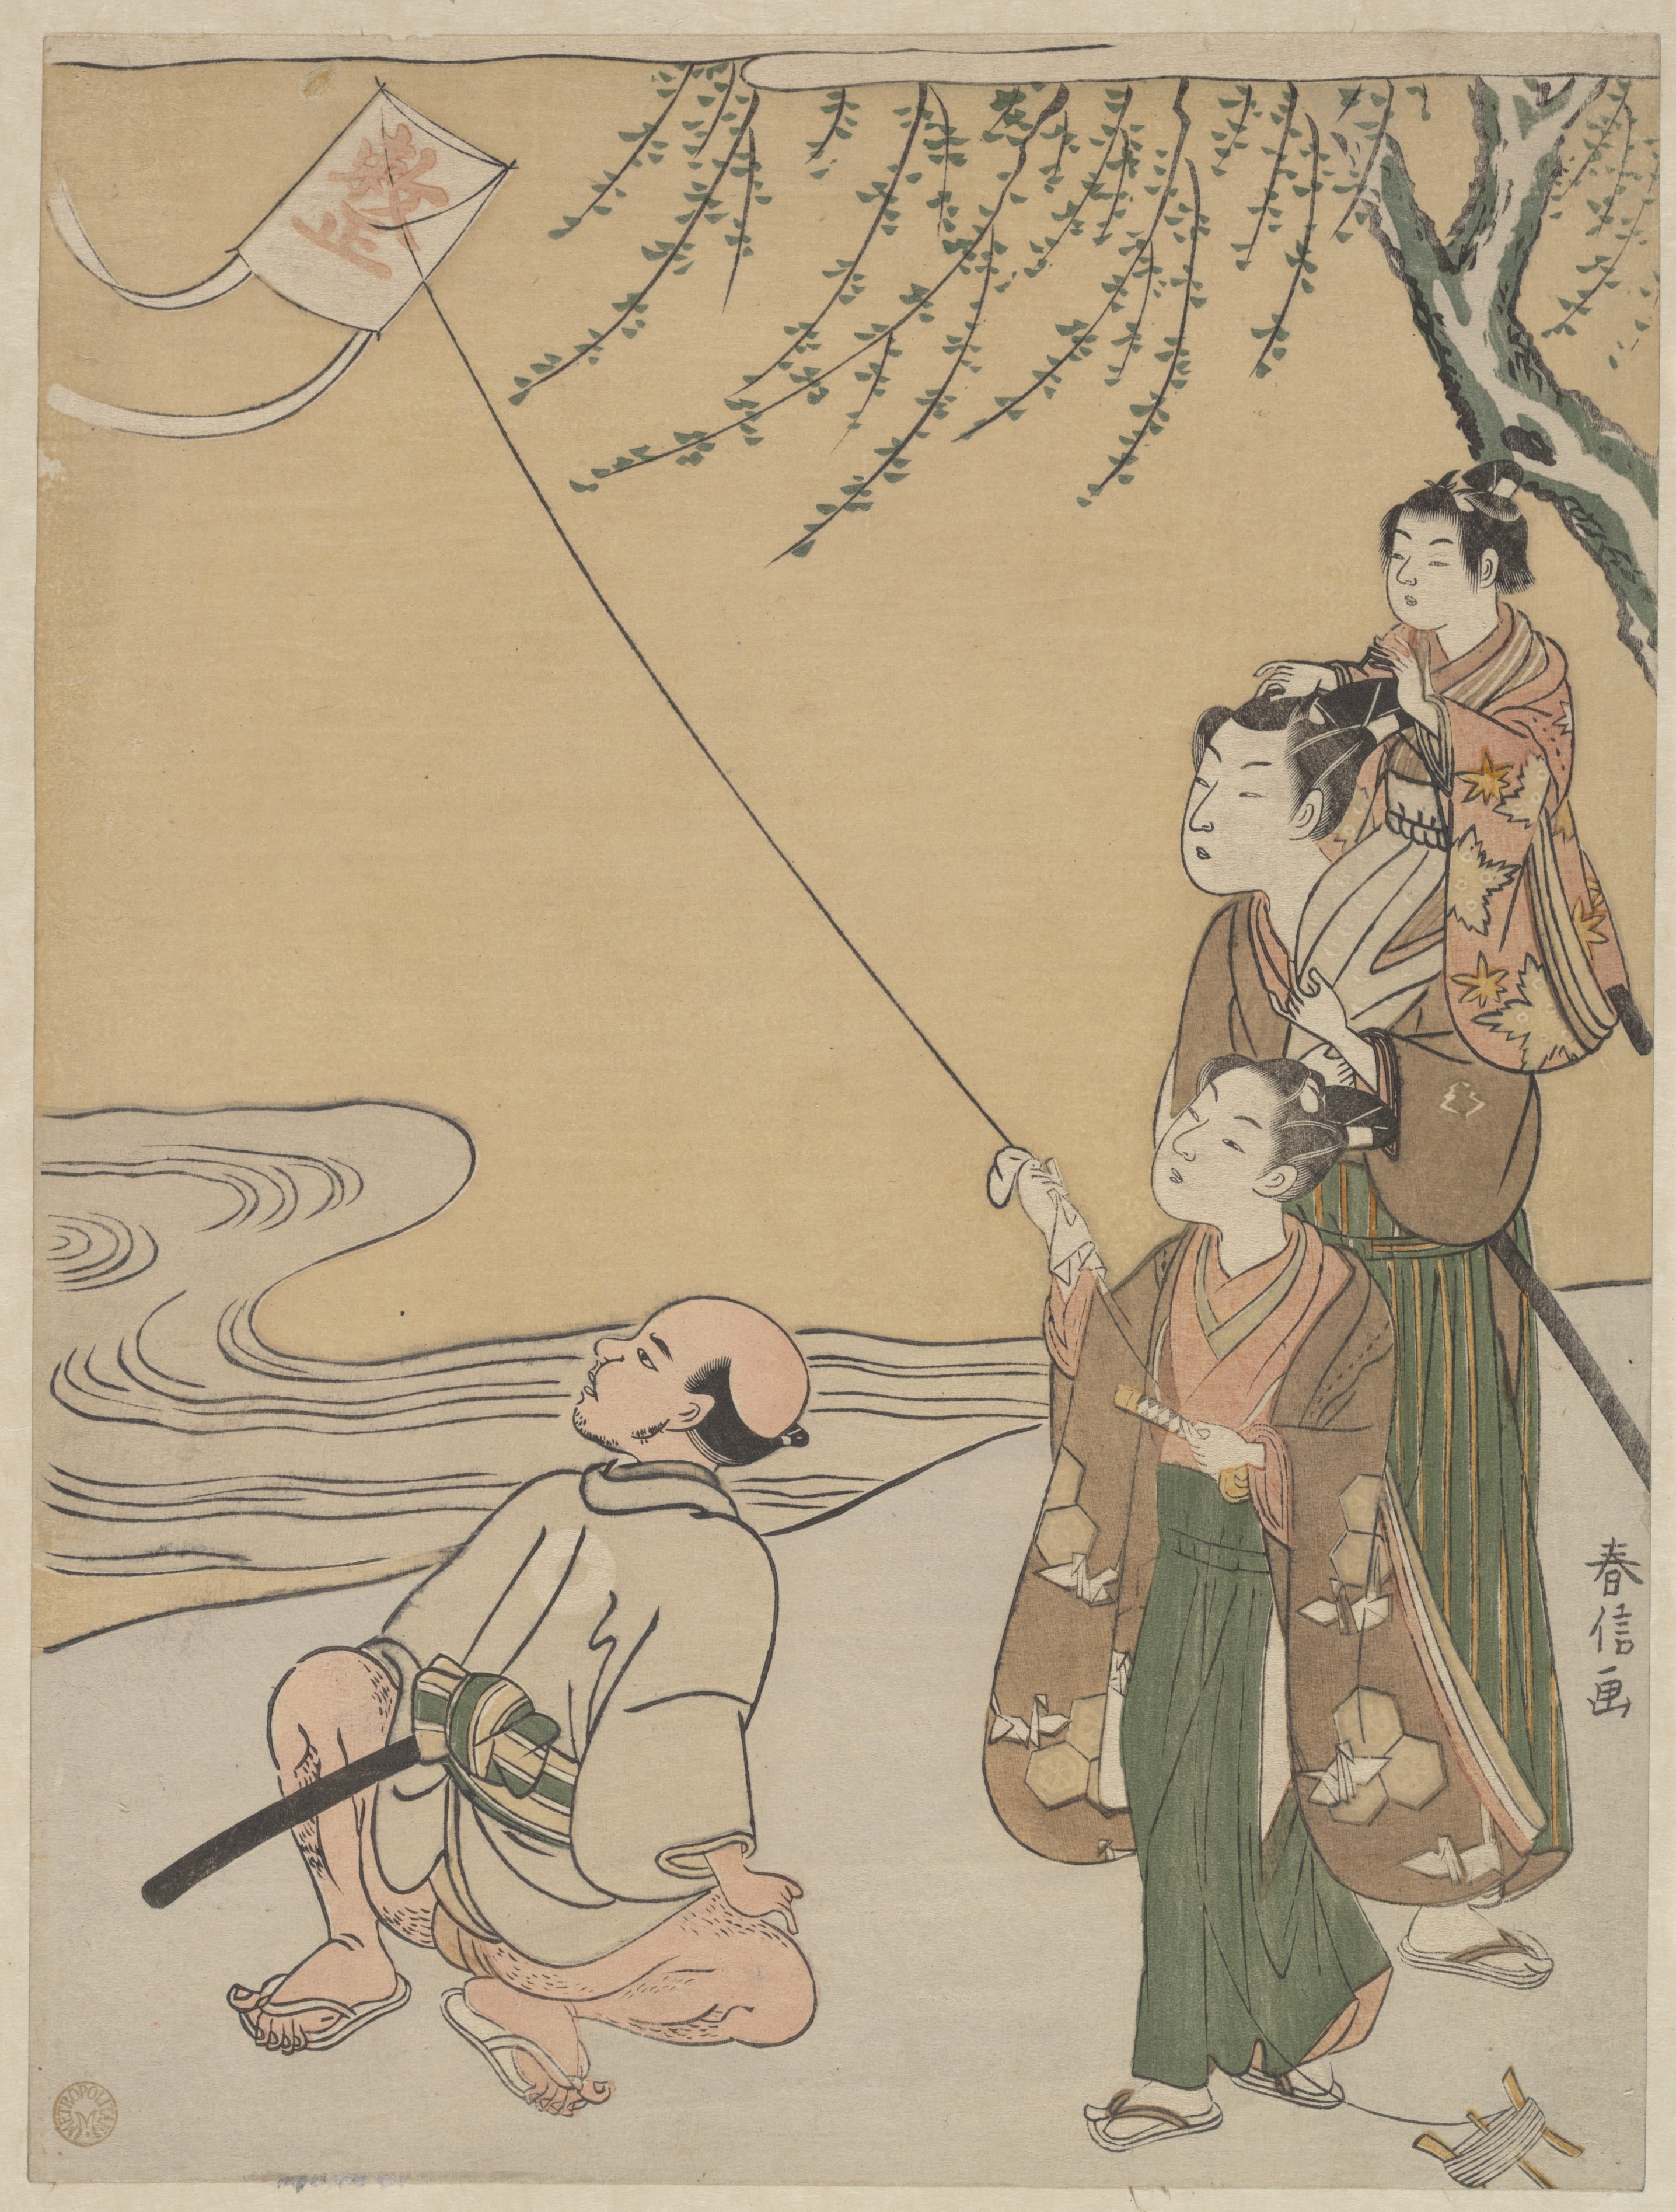 Puszczanie latawca by Suzuki Harunobu - 1766 - 27,3 x 20,6 cm 